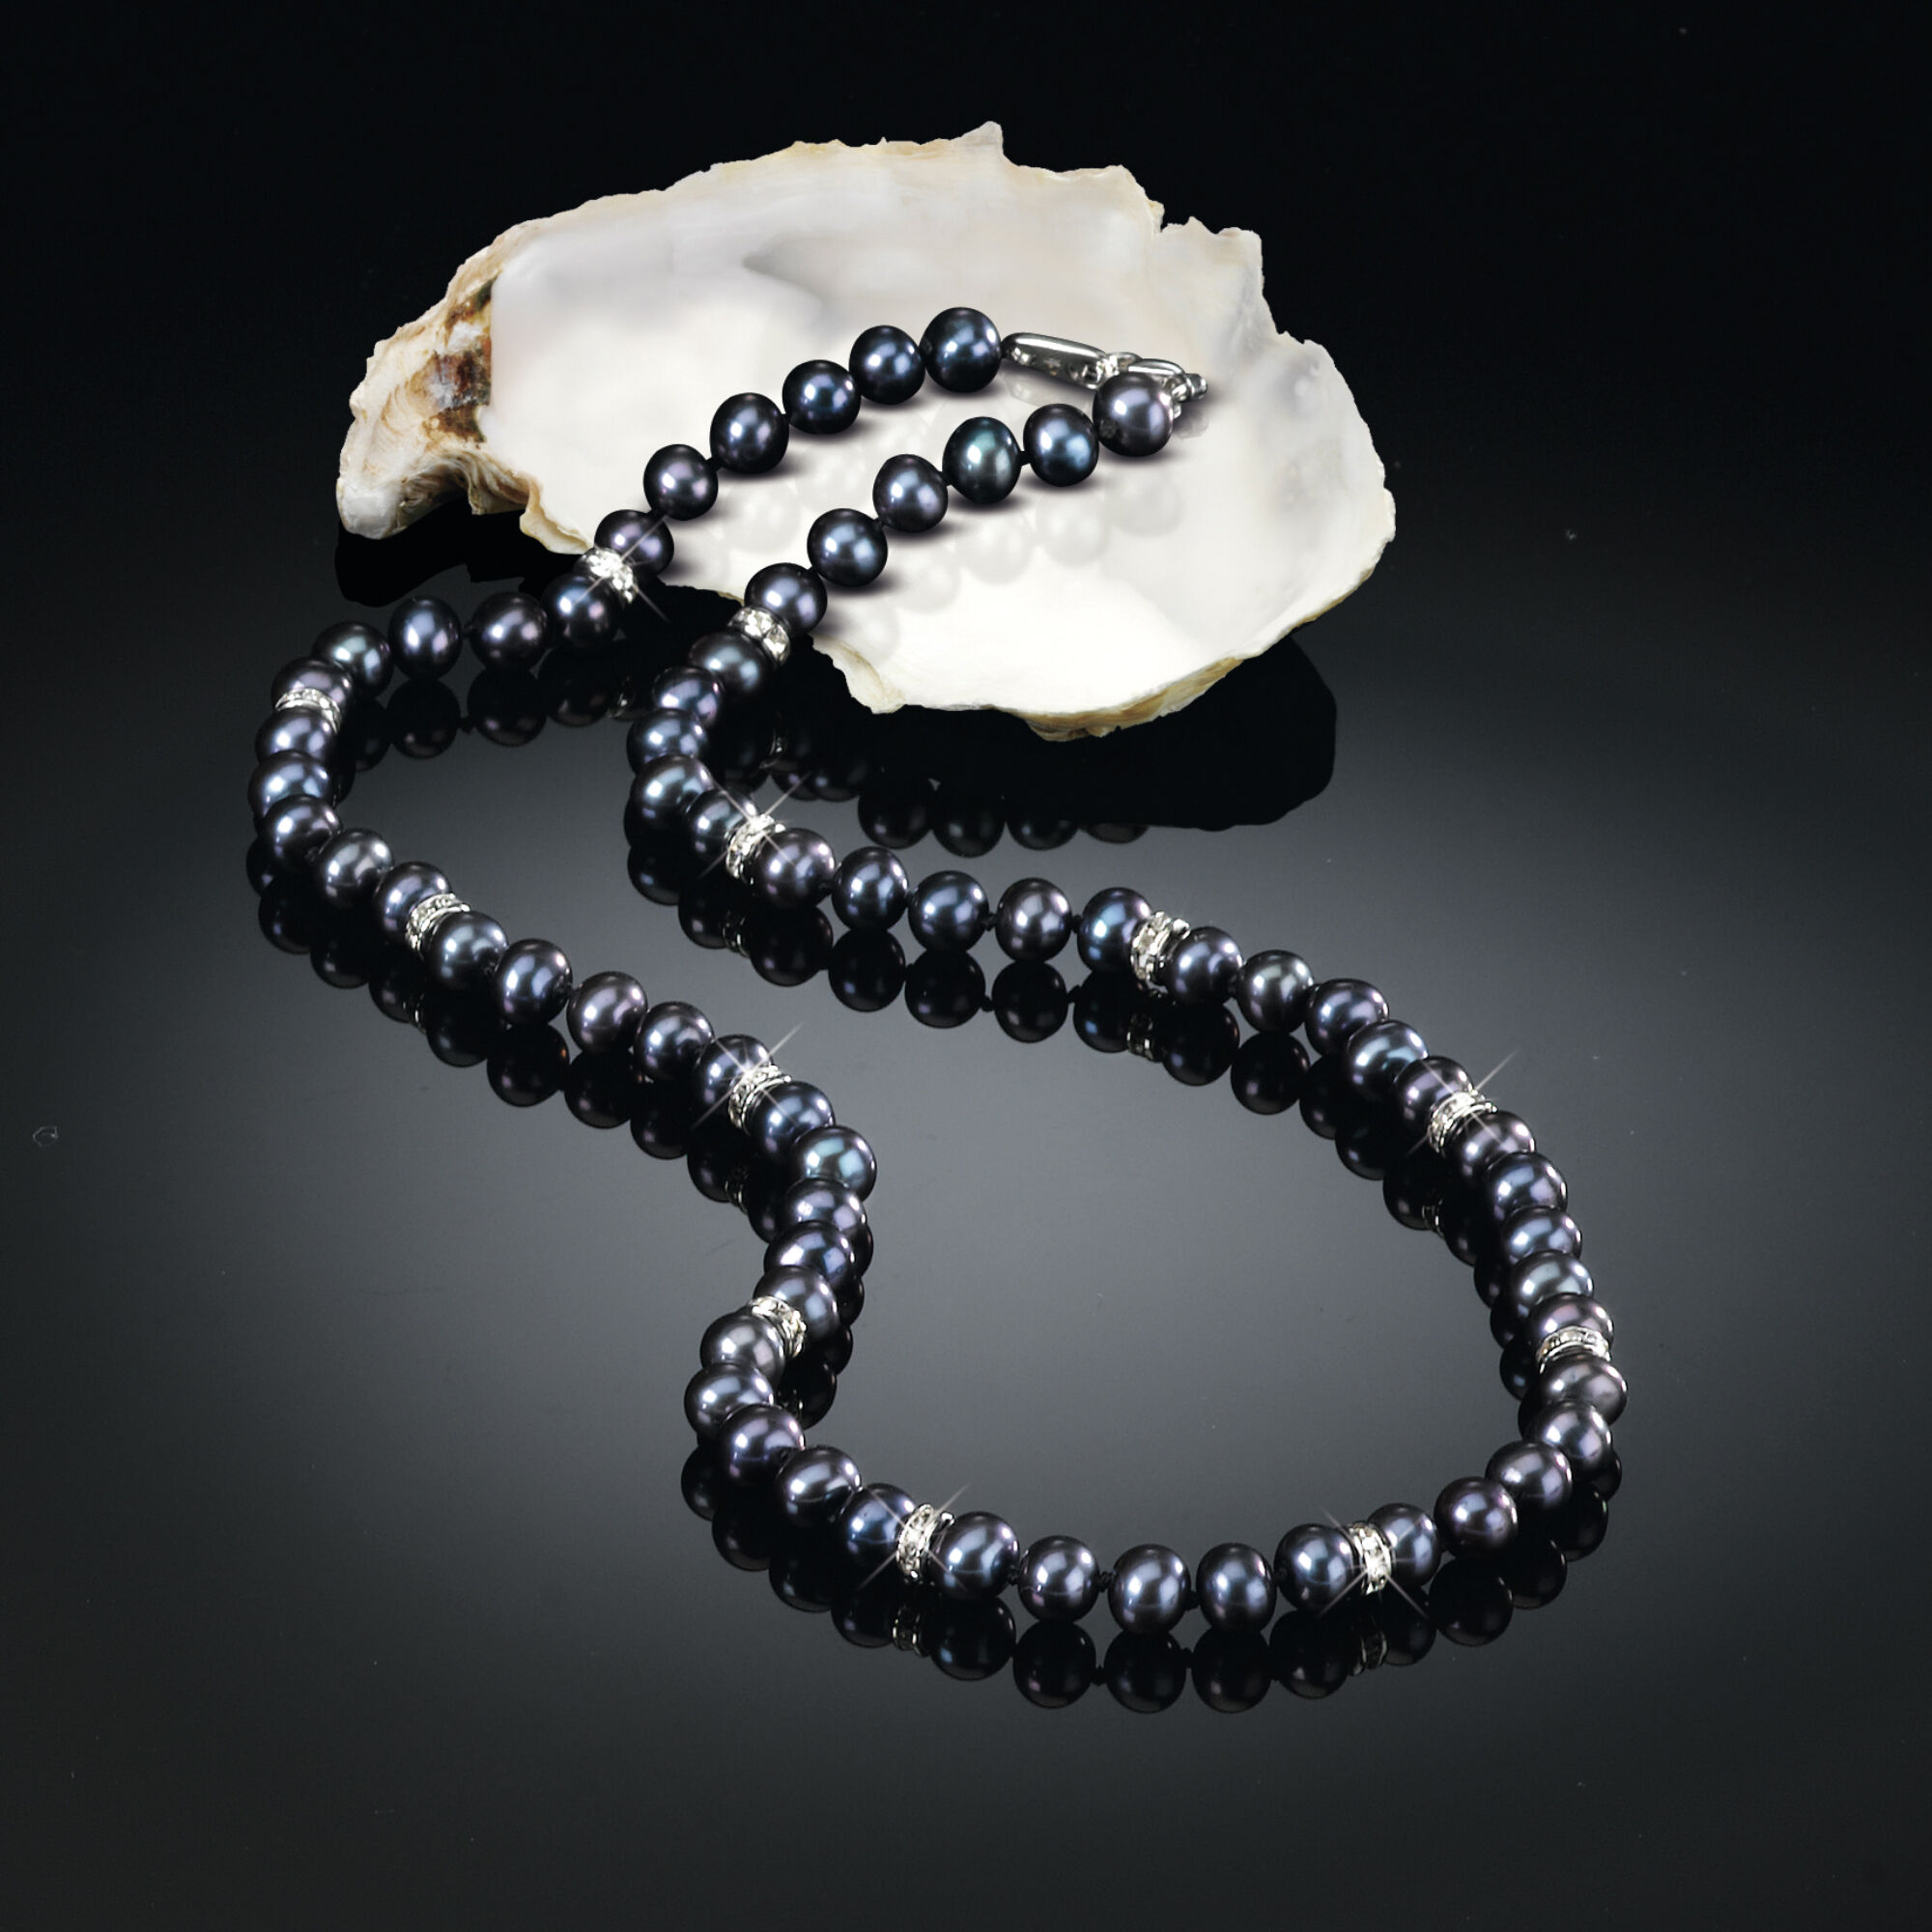 Midnight Spell Black Pearl Necklace 1333 0337 b shell